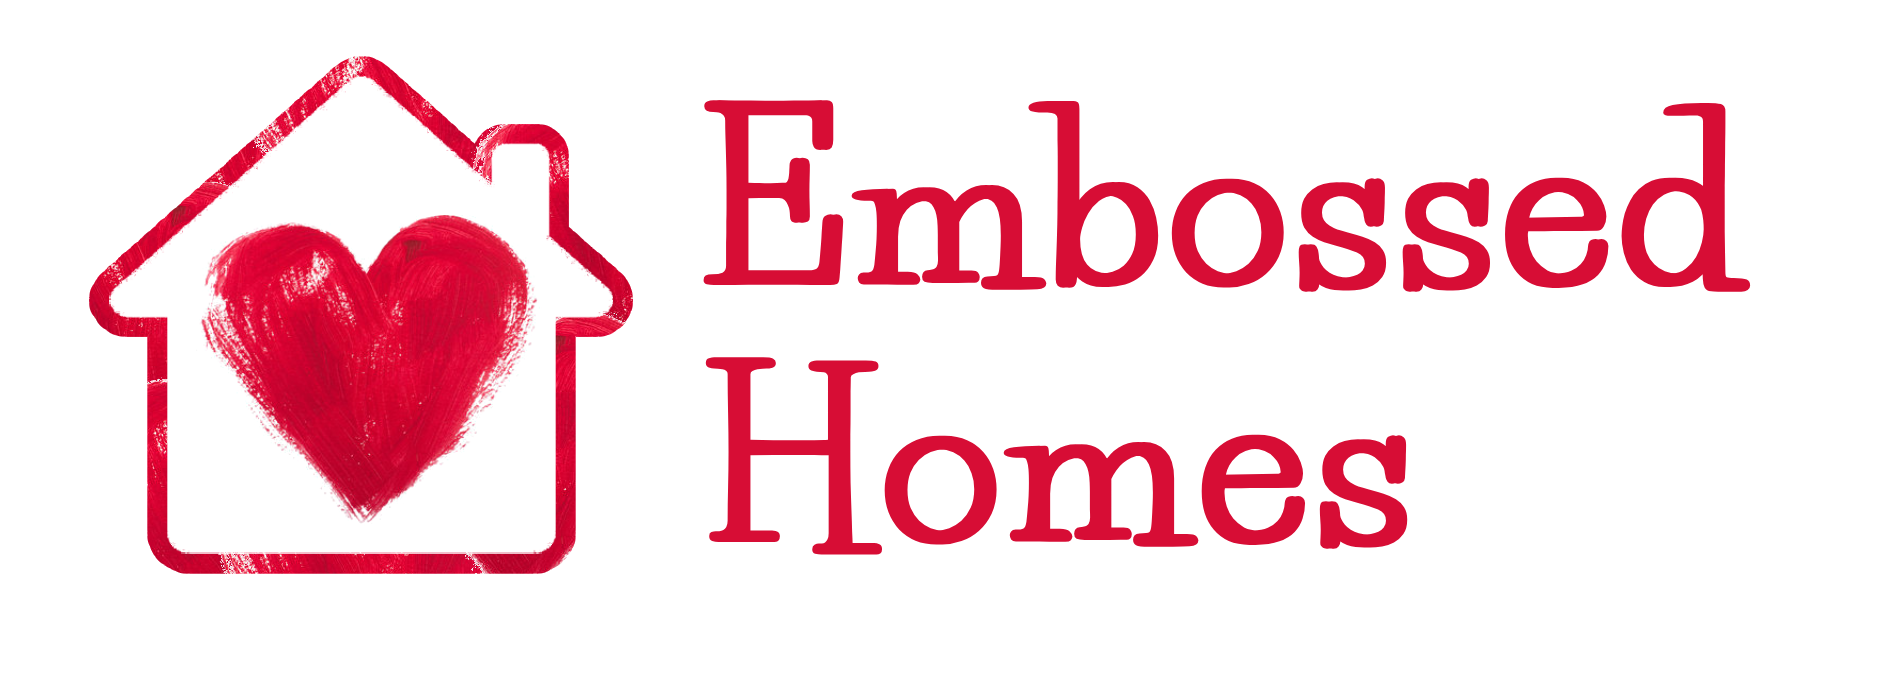 Embossed Homes Logo